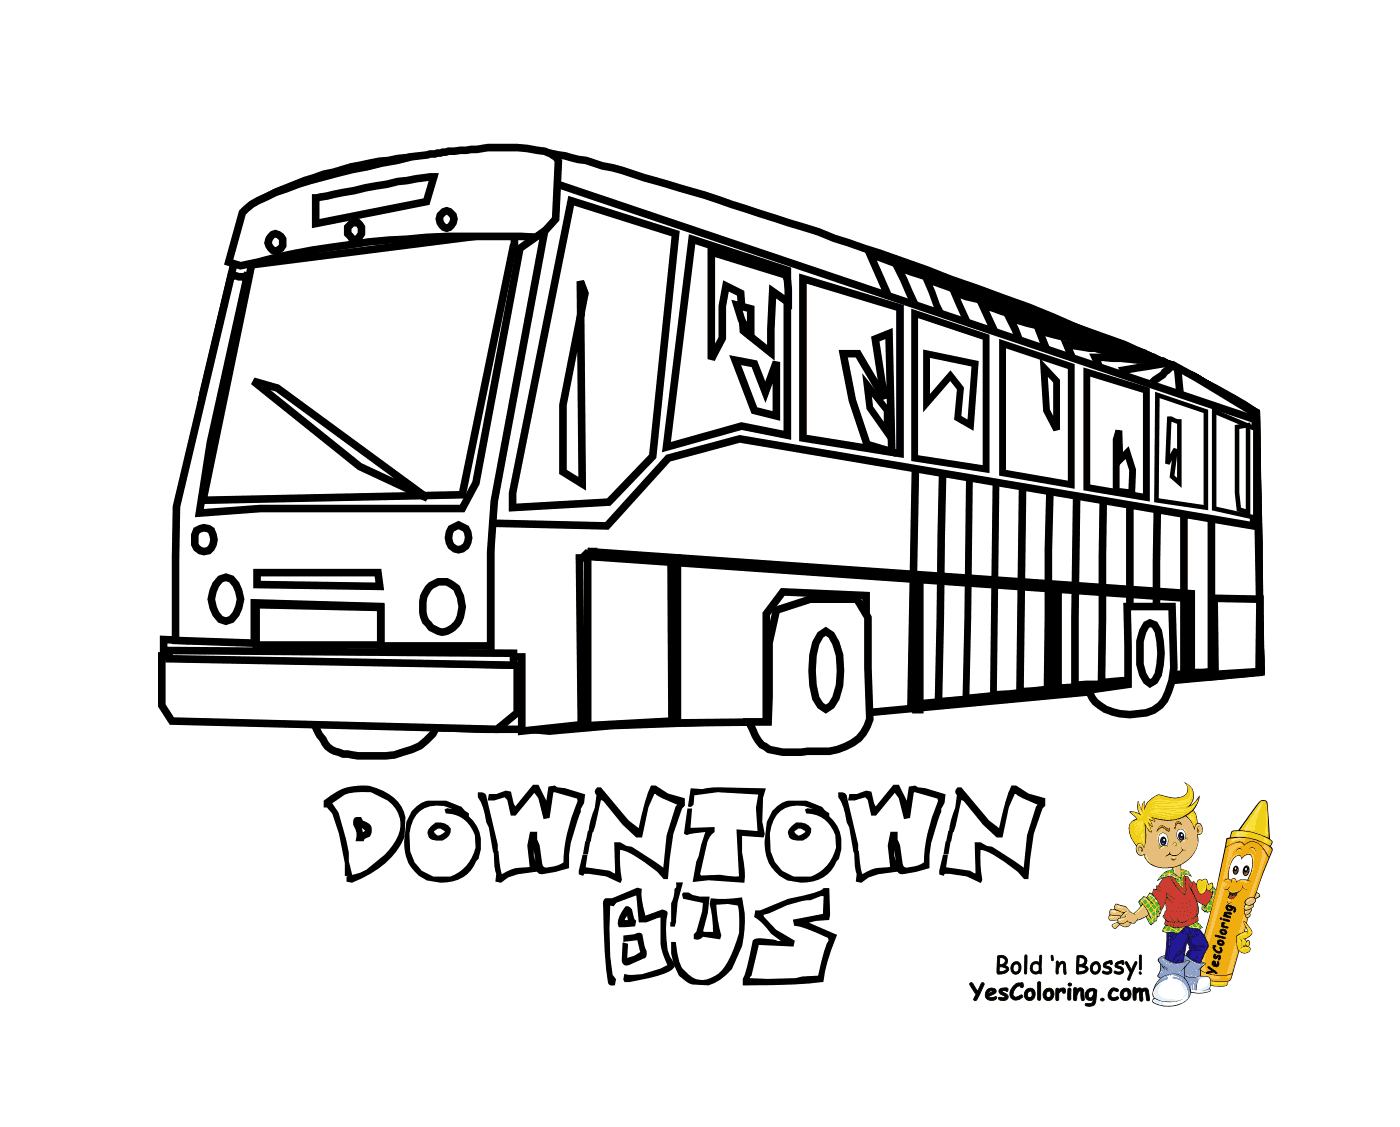  市中心有一辆城市公共汽车 